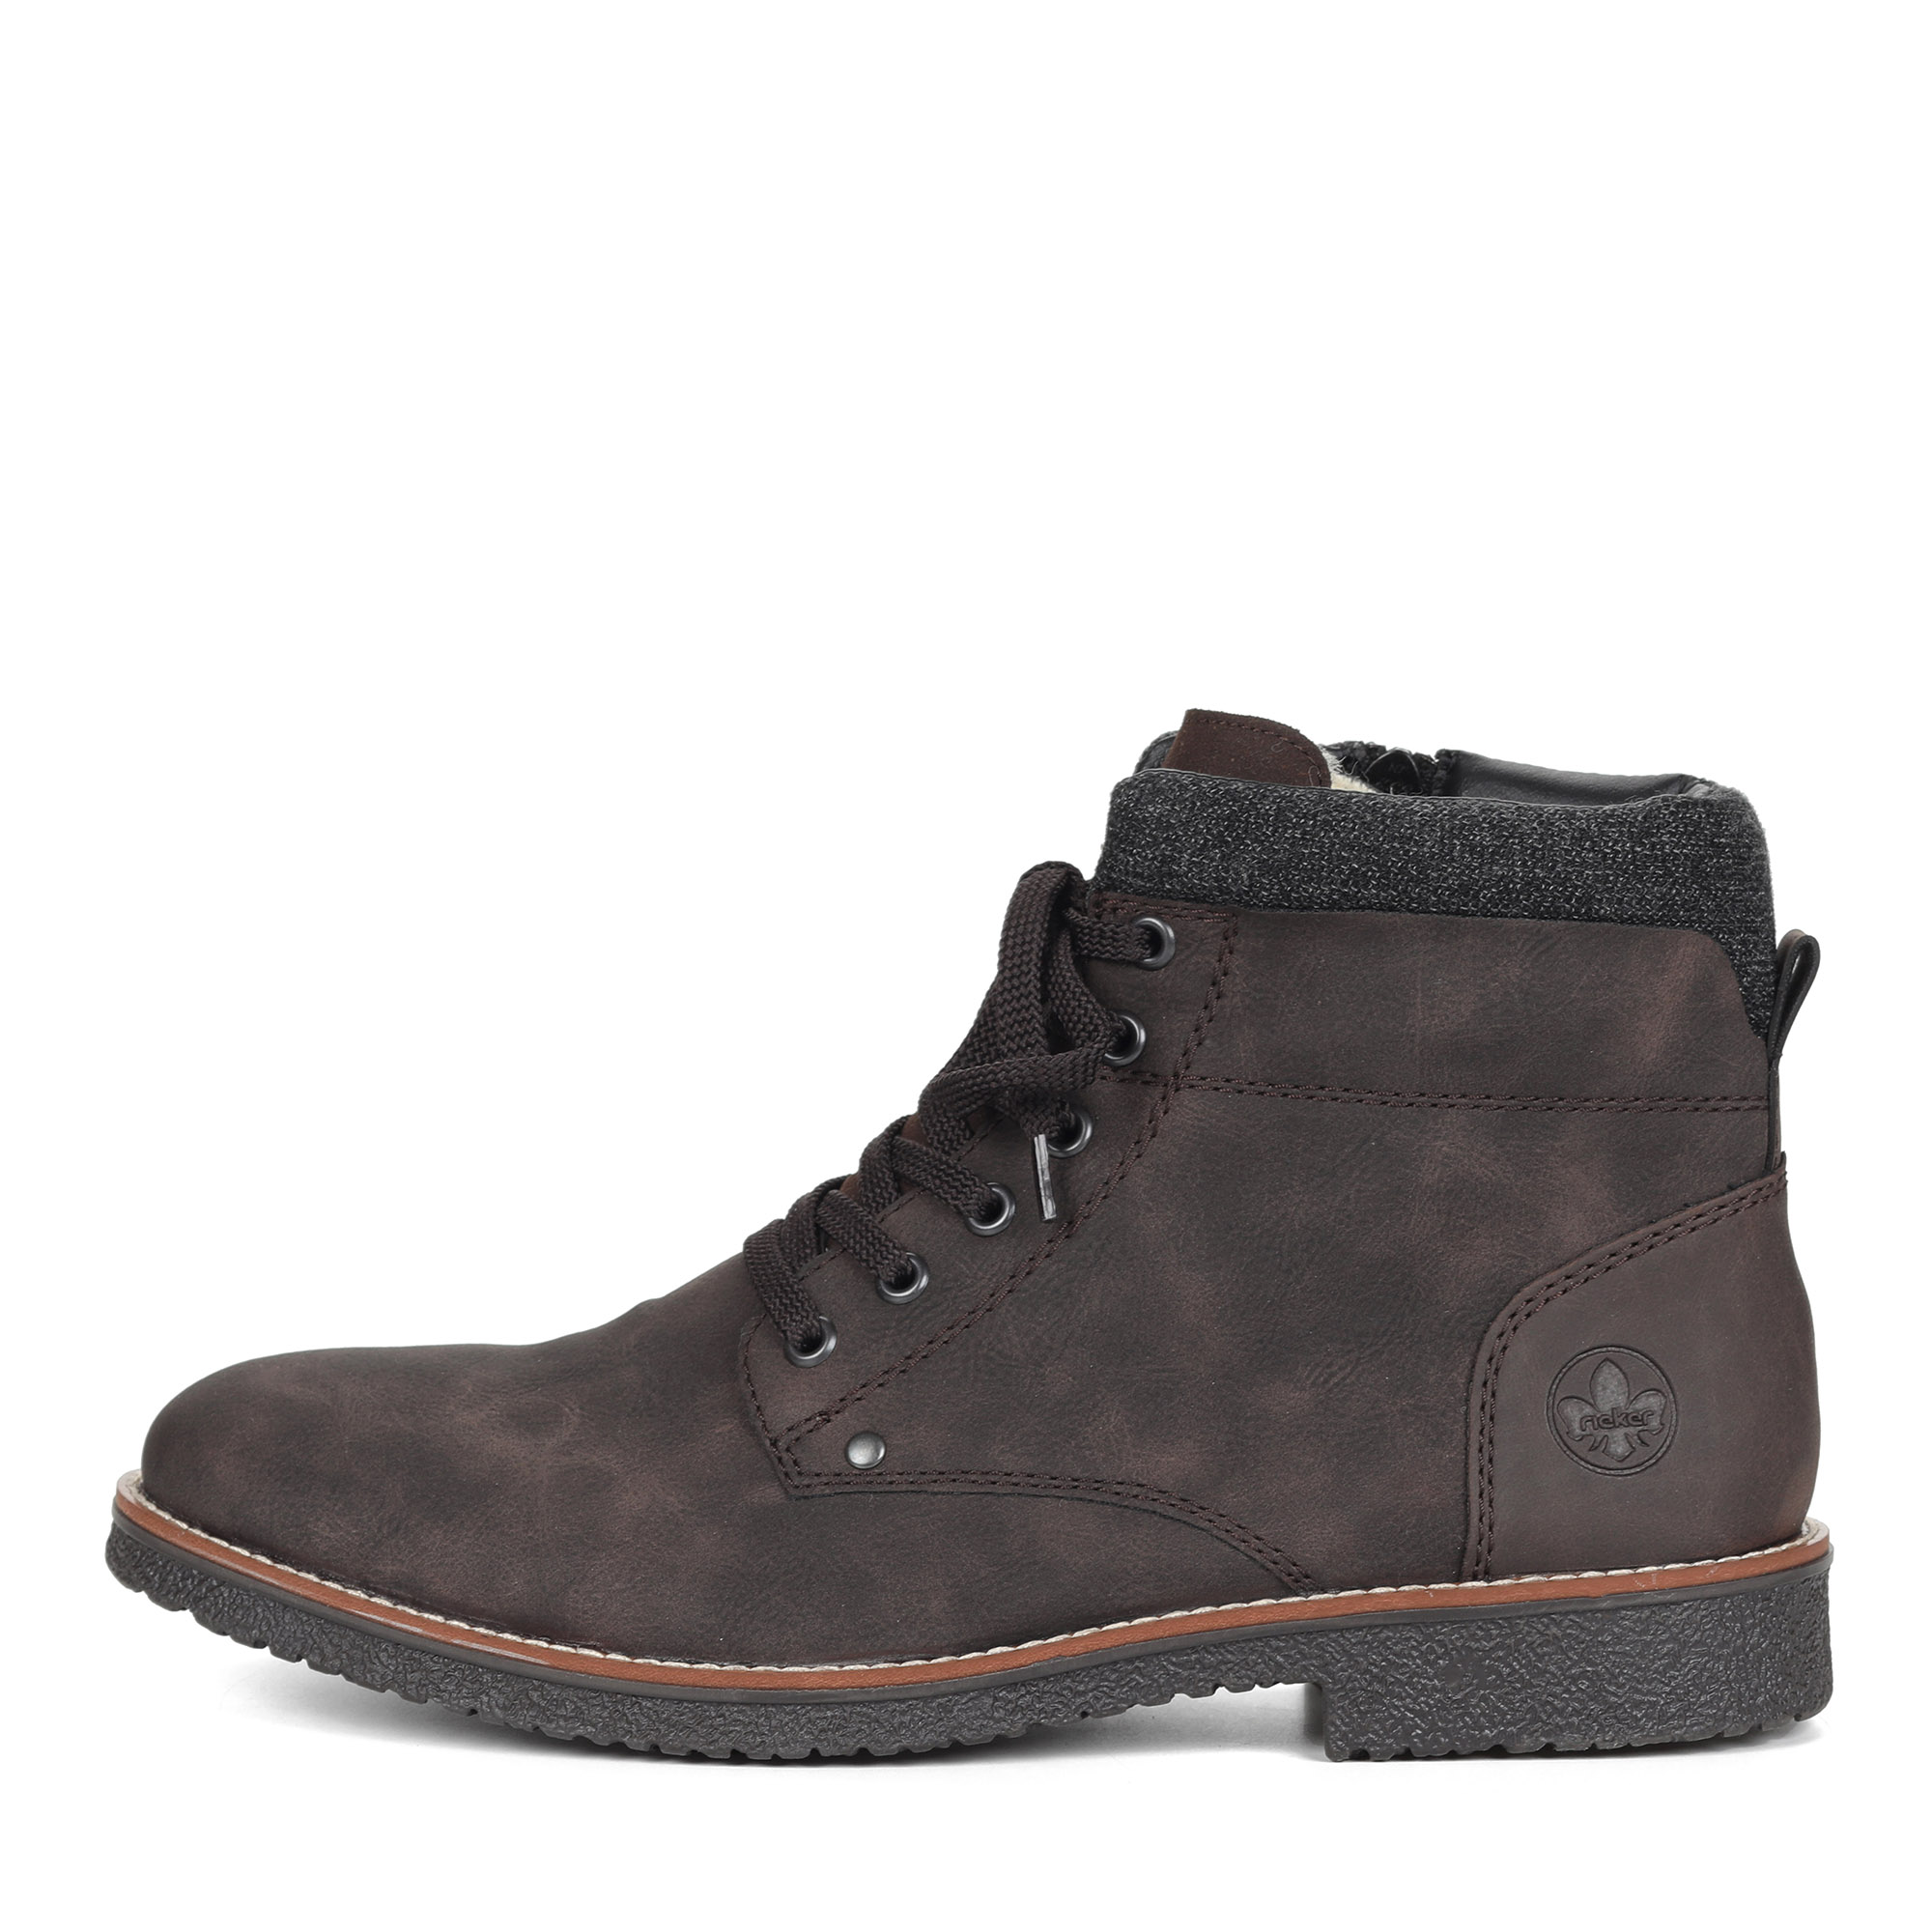 Коричневые ботинки из экокожи на подкладке из натуральной шерсти на шнурках Rieker, размер 41, цвет коричневый - фото 2